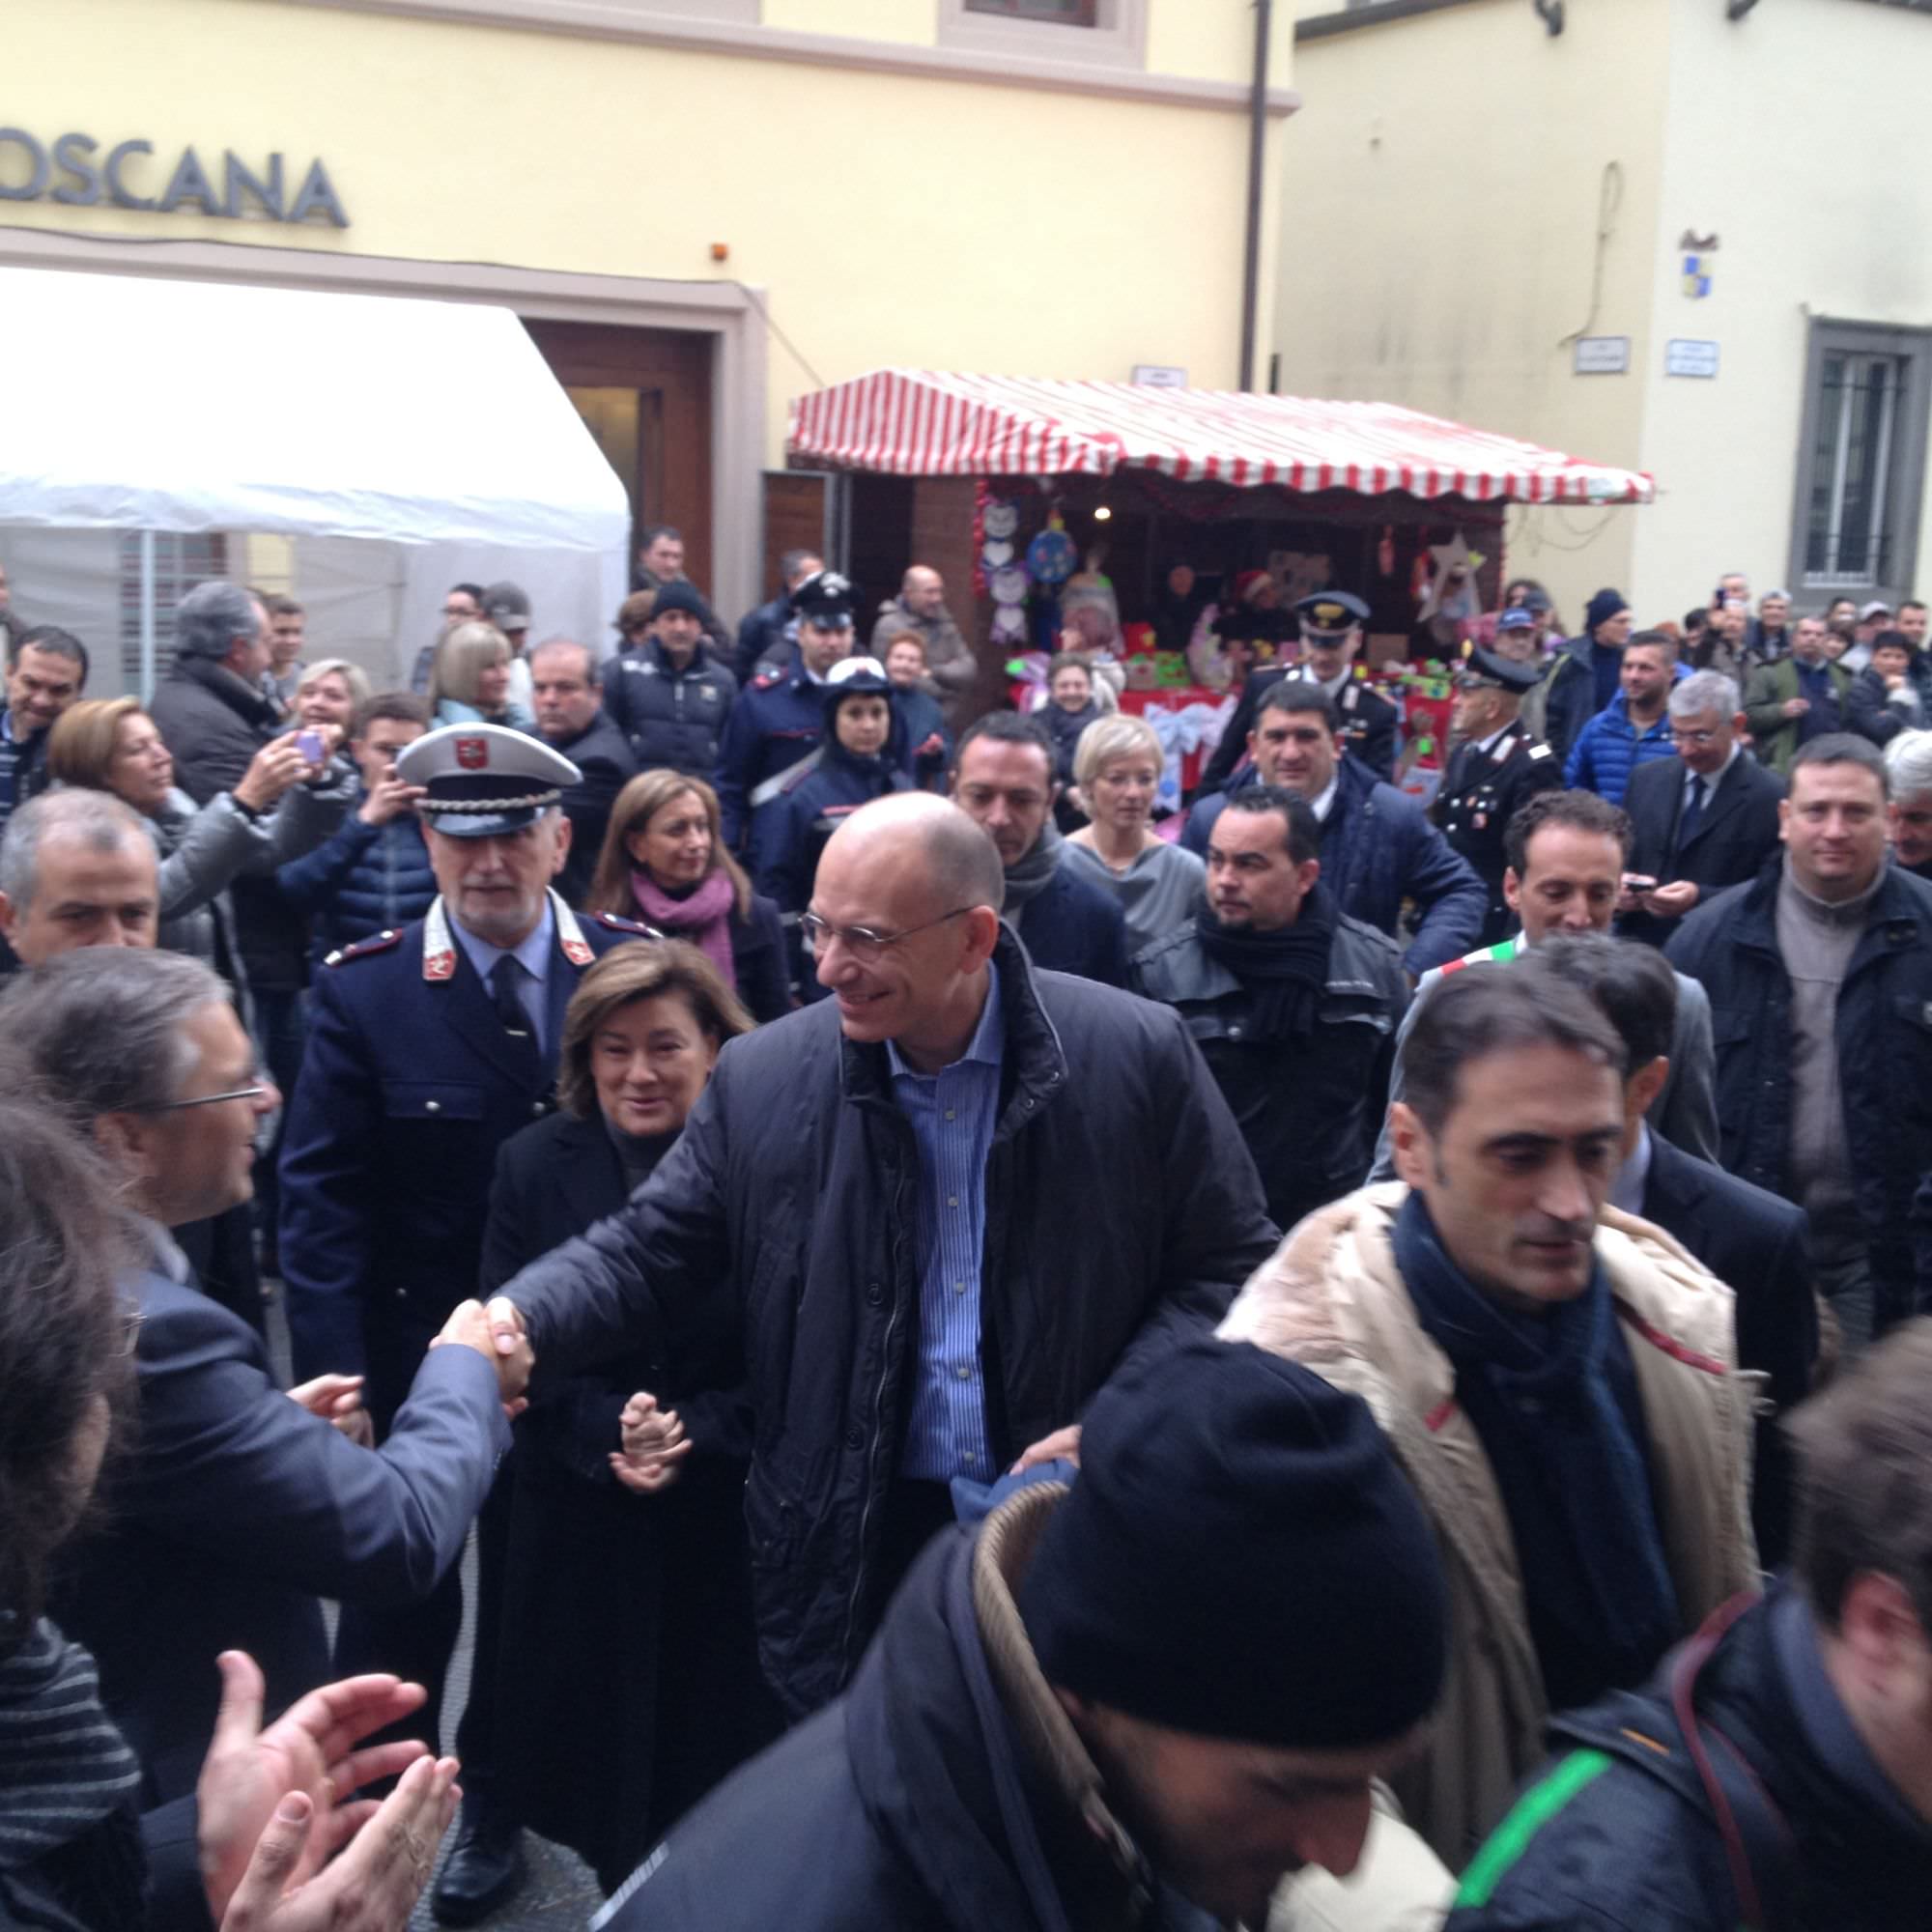 La piazza accoglie Enrico Letta con molti applausi e qualche voce di dissenso